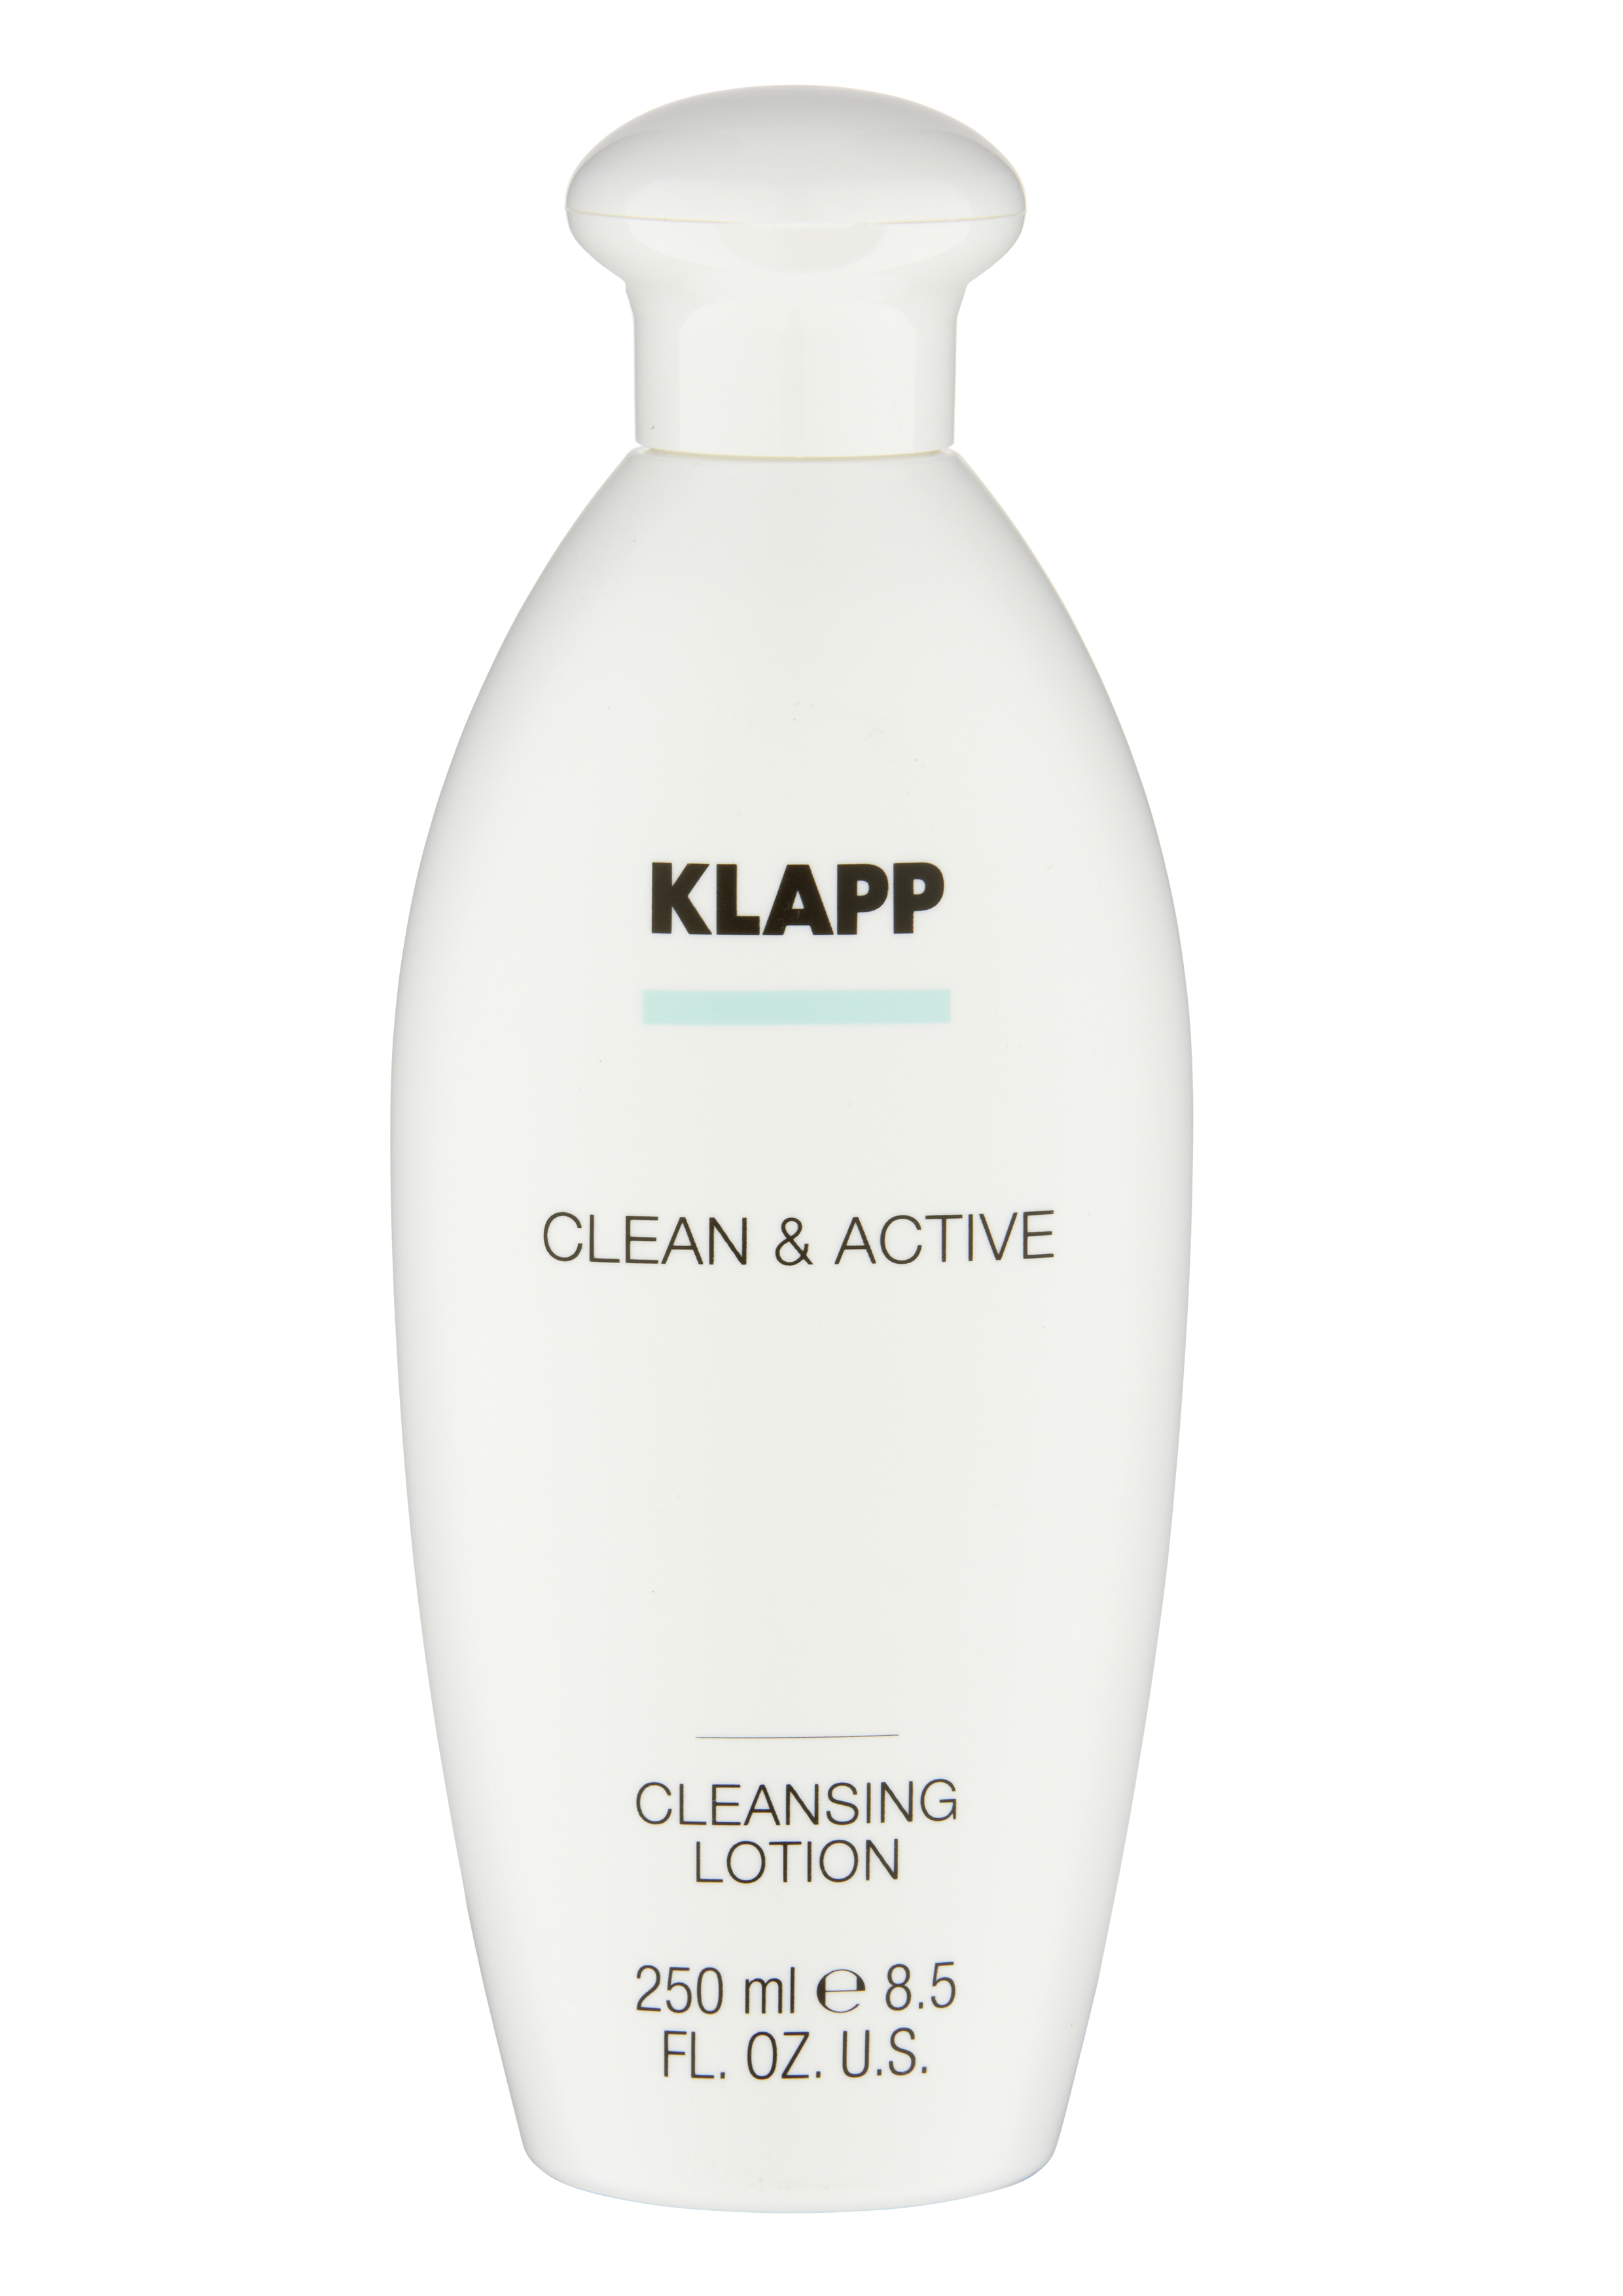 CLEAN & ACTIVE